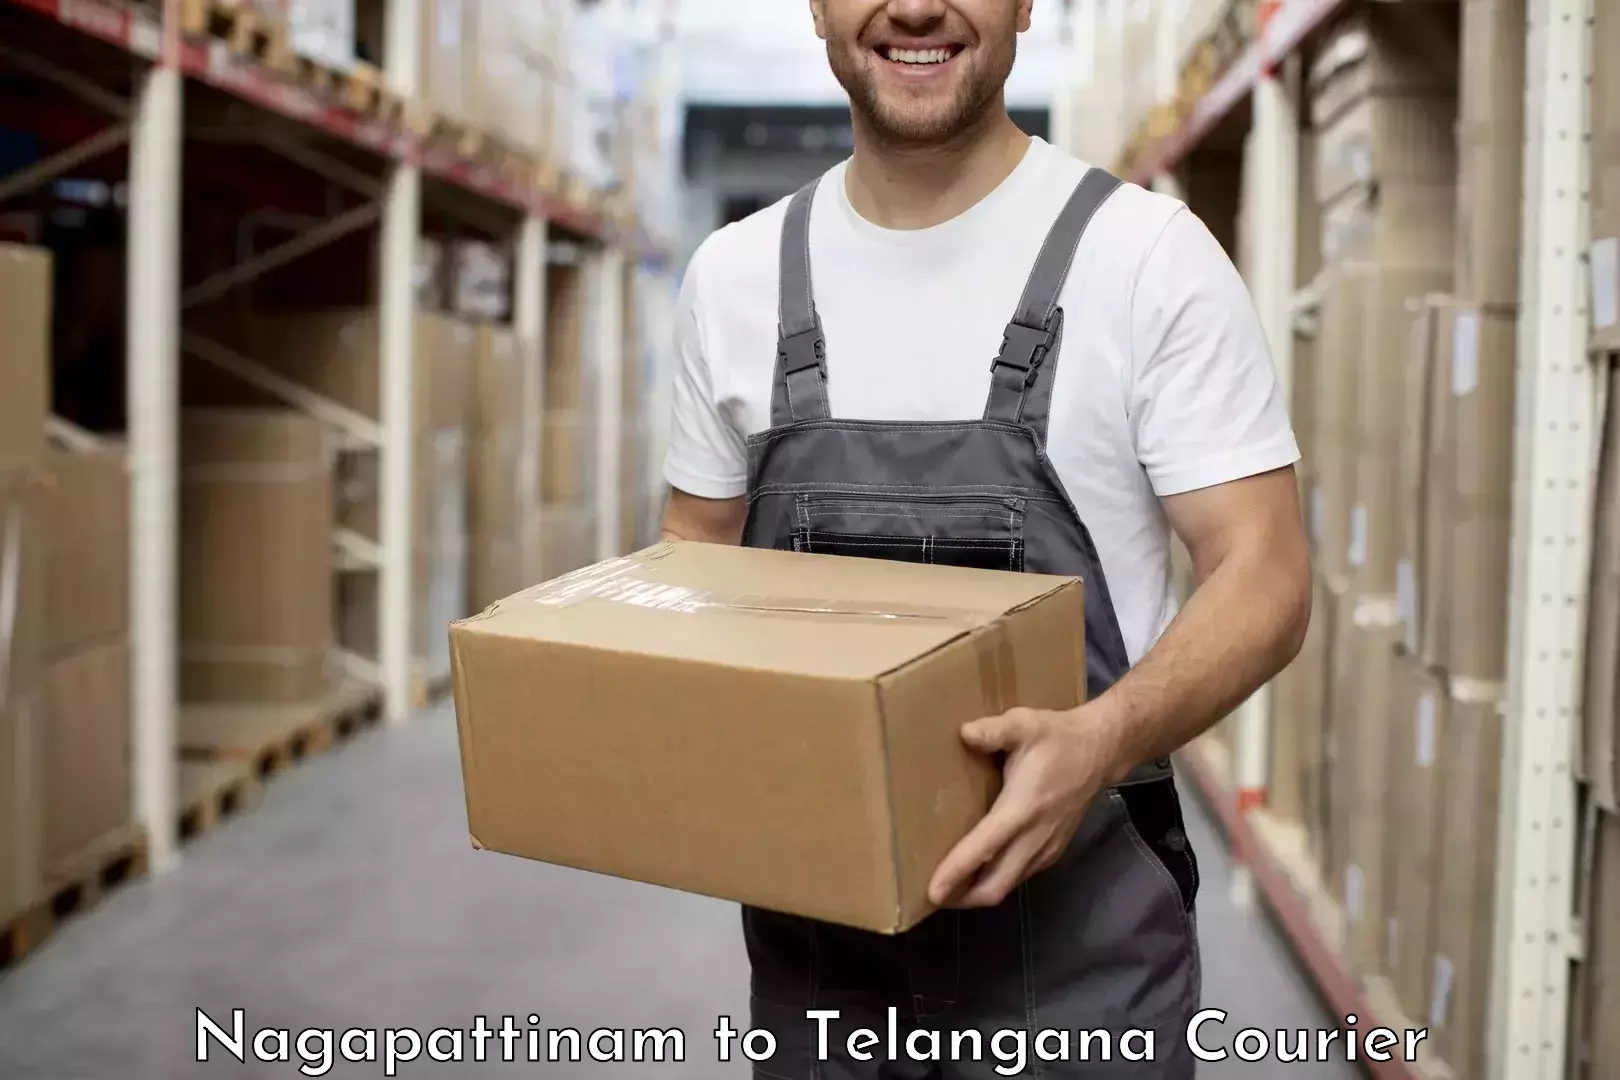 Reliable shipping solutions Nagapattinam to Mahabubabad